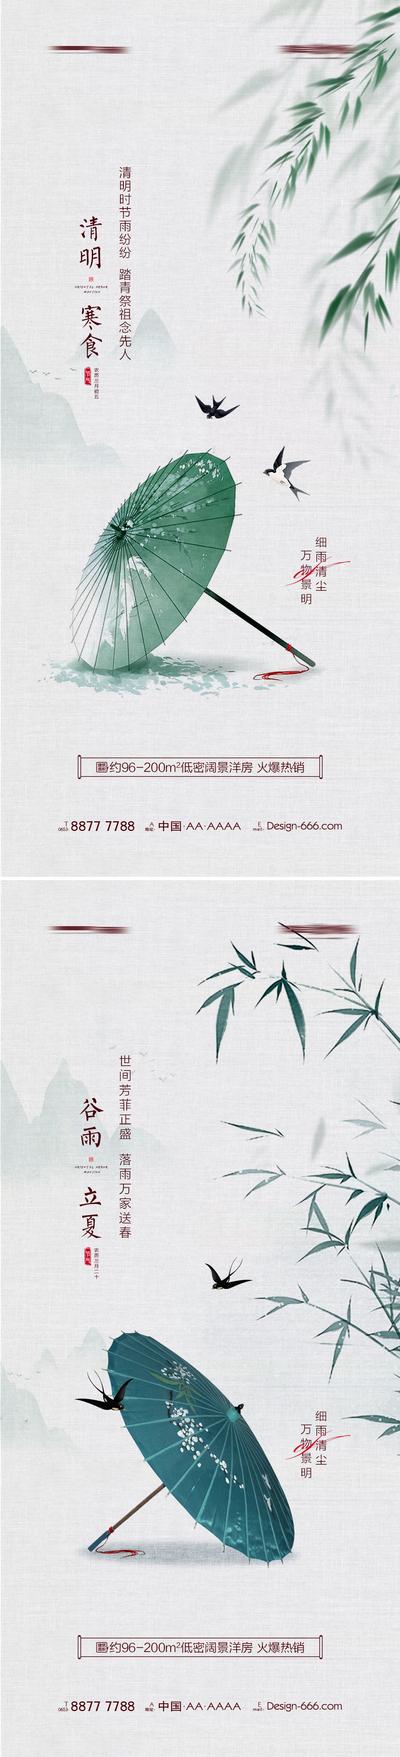 【南门网】海报 地产 中国传统节日 清明节 寒食 谷雨 立夏 雨伞 柳条 竹子